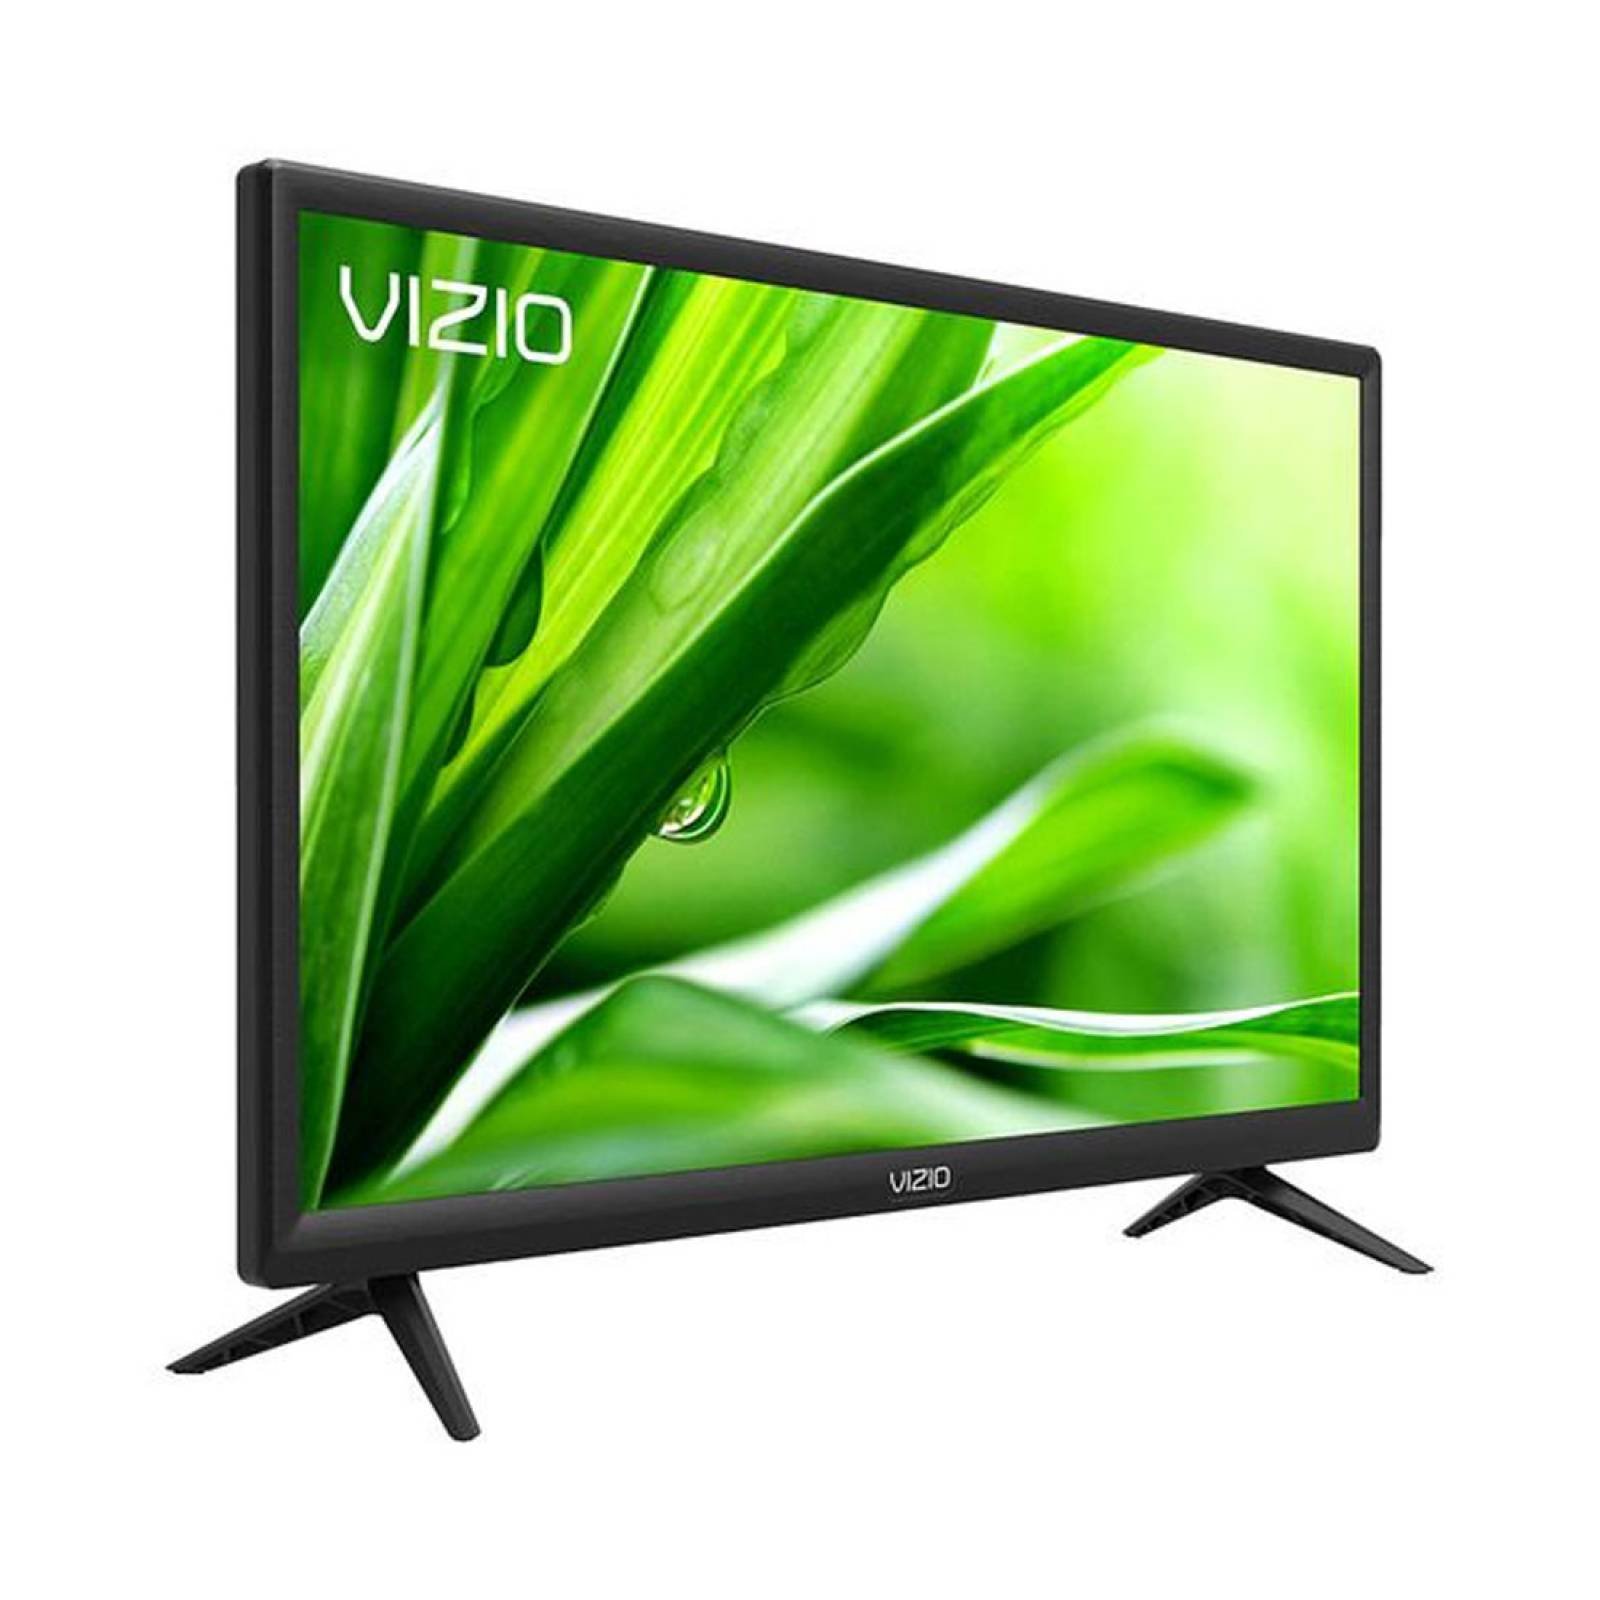 TV VIZIO 24 LED 720P 60HZ